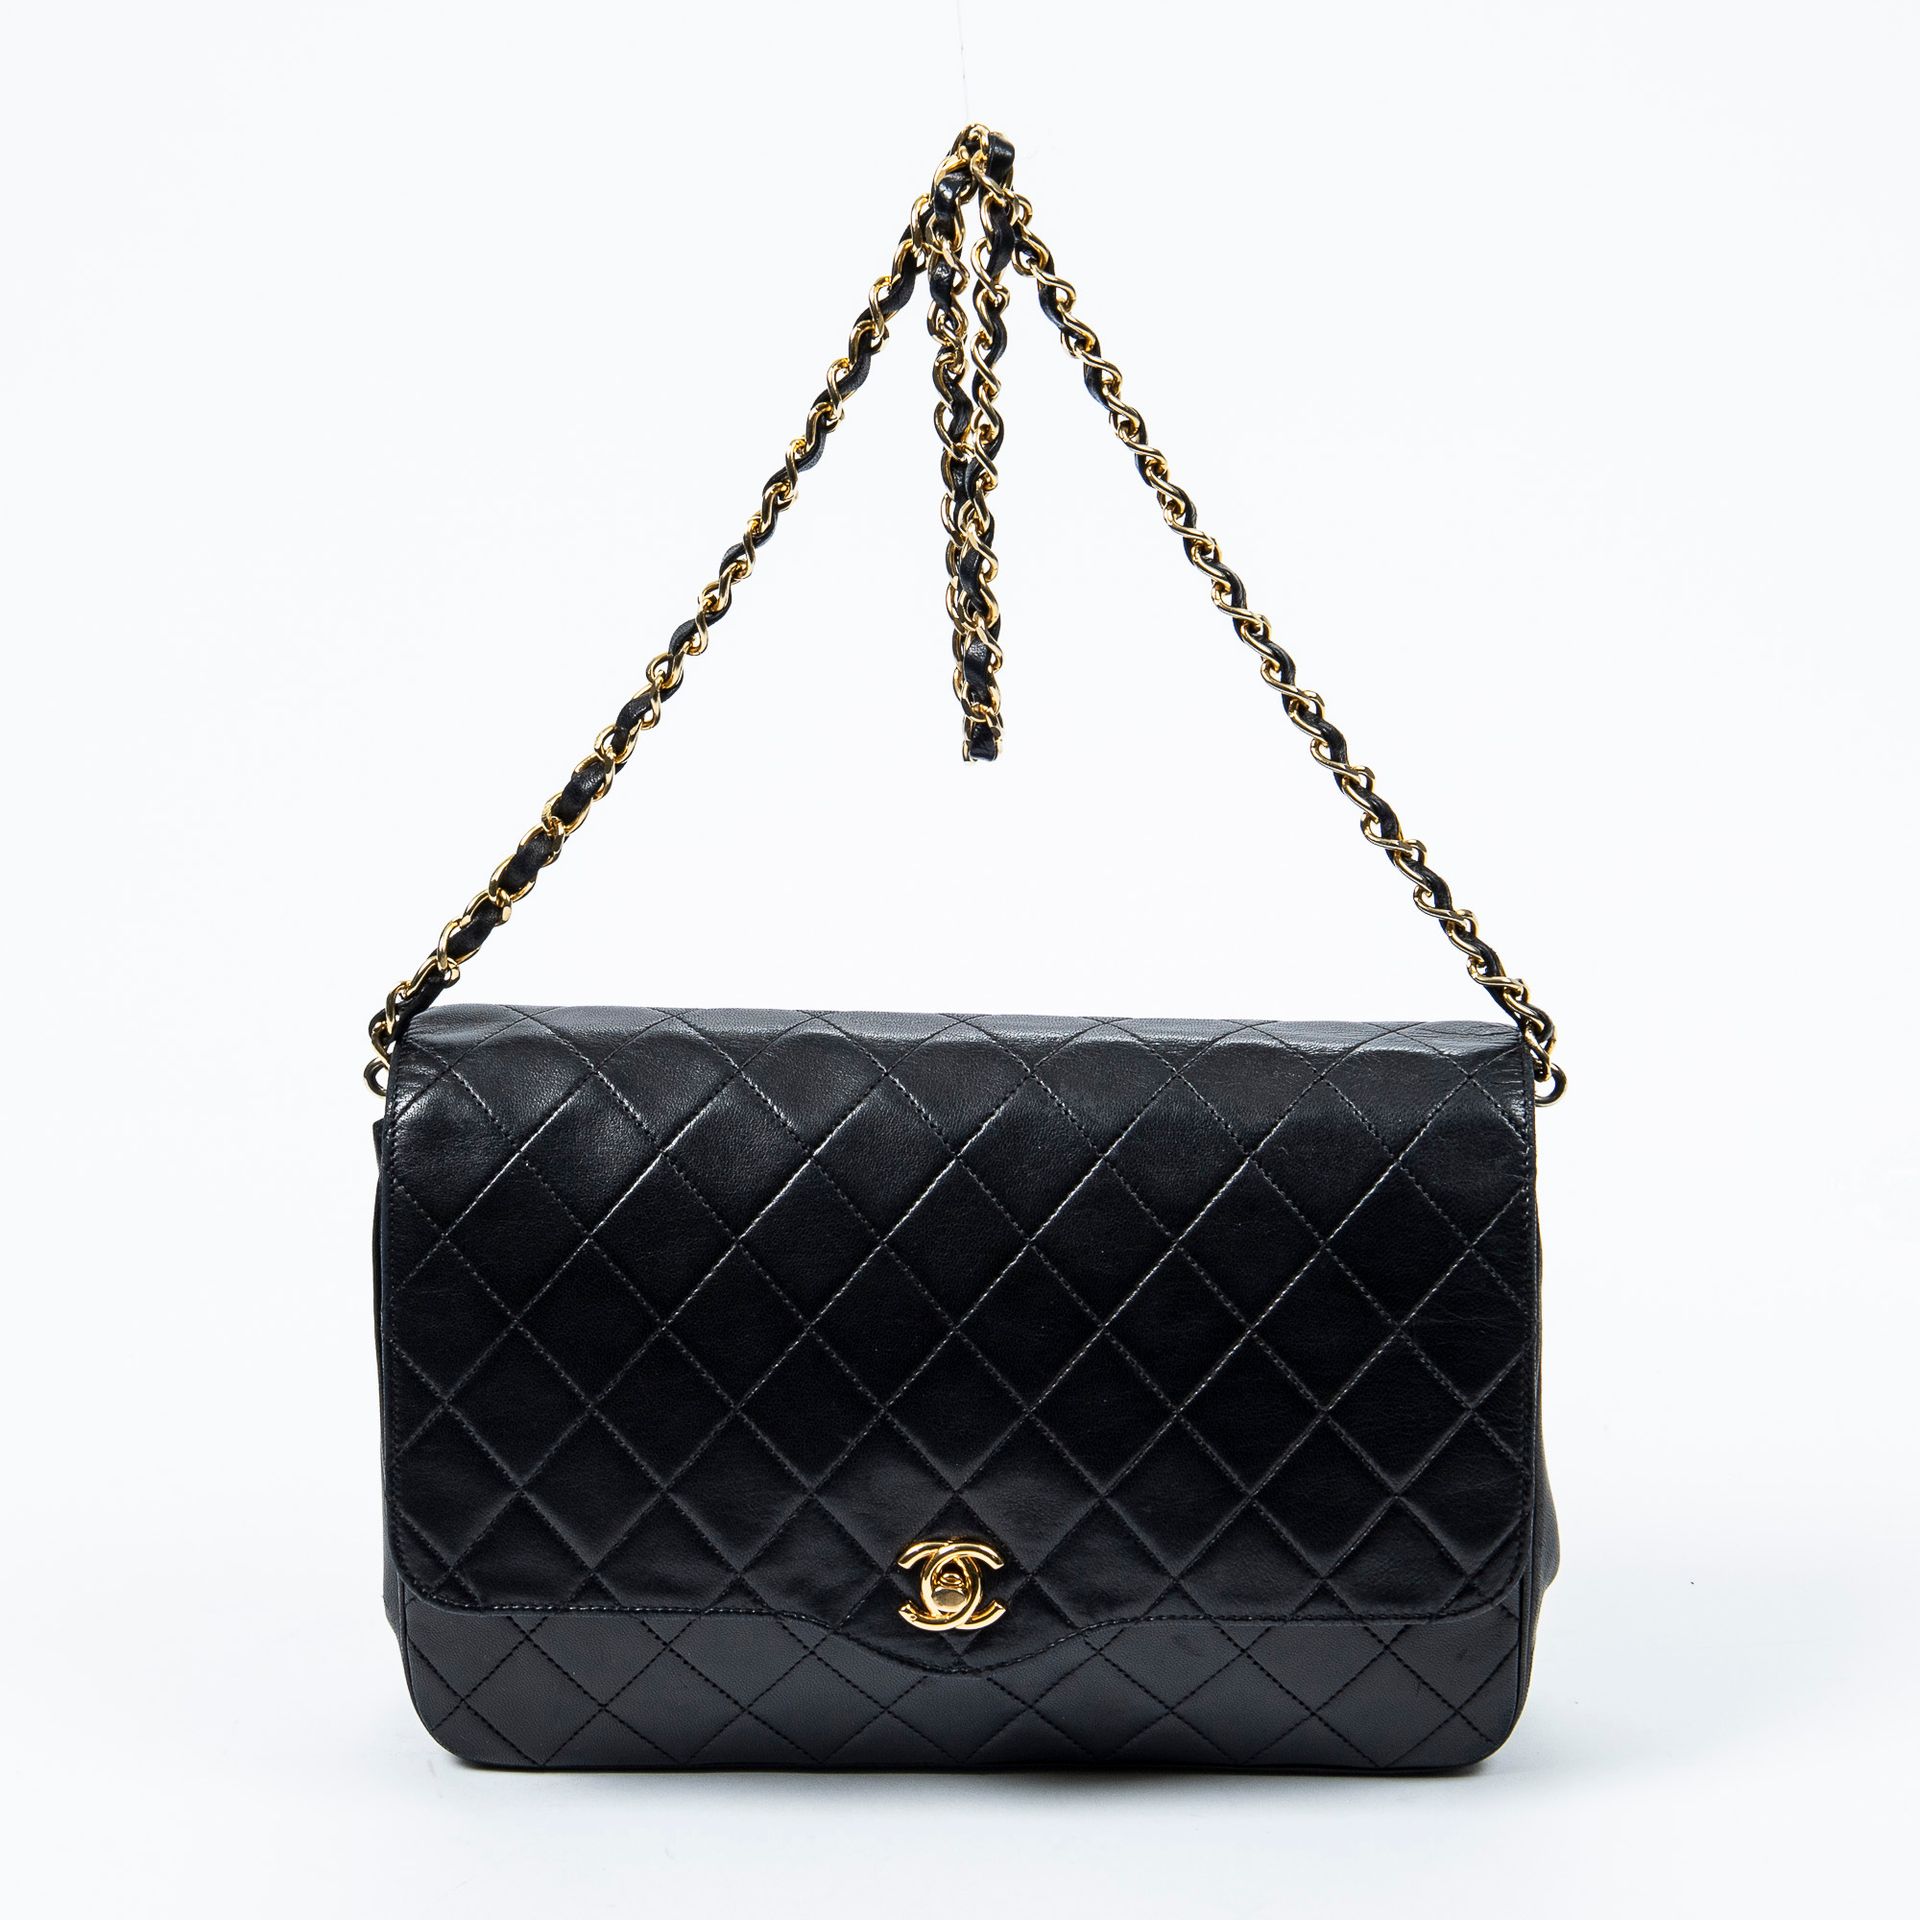 Chanel 香奈儿 - 黑色绗缝小羊皮翻盖包 - 内有两个红色织物袋口 - 镀金金属链用于肩背 - 尺寸：25x16x5厘米 - 状态良好